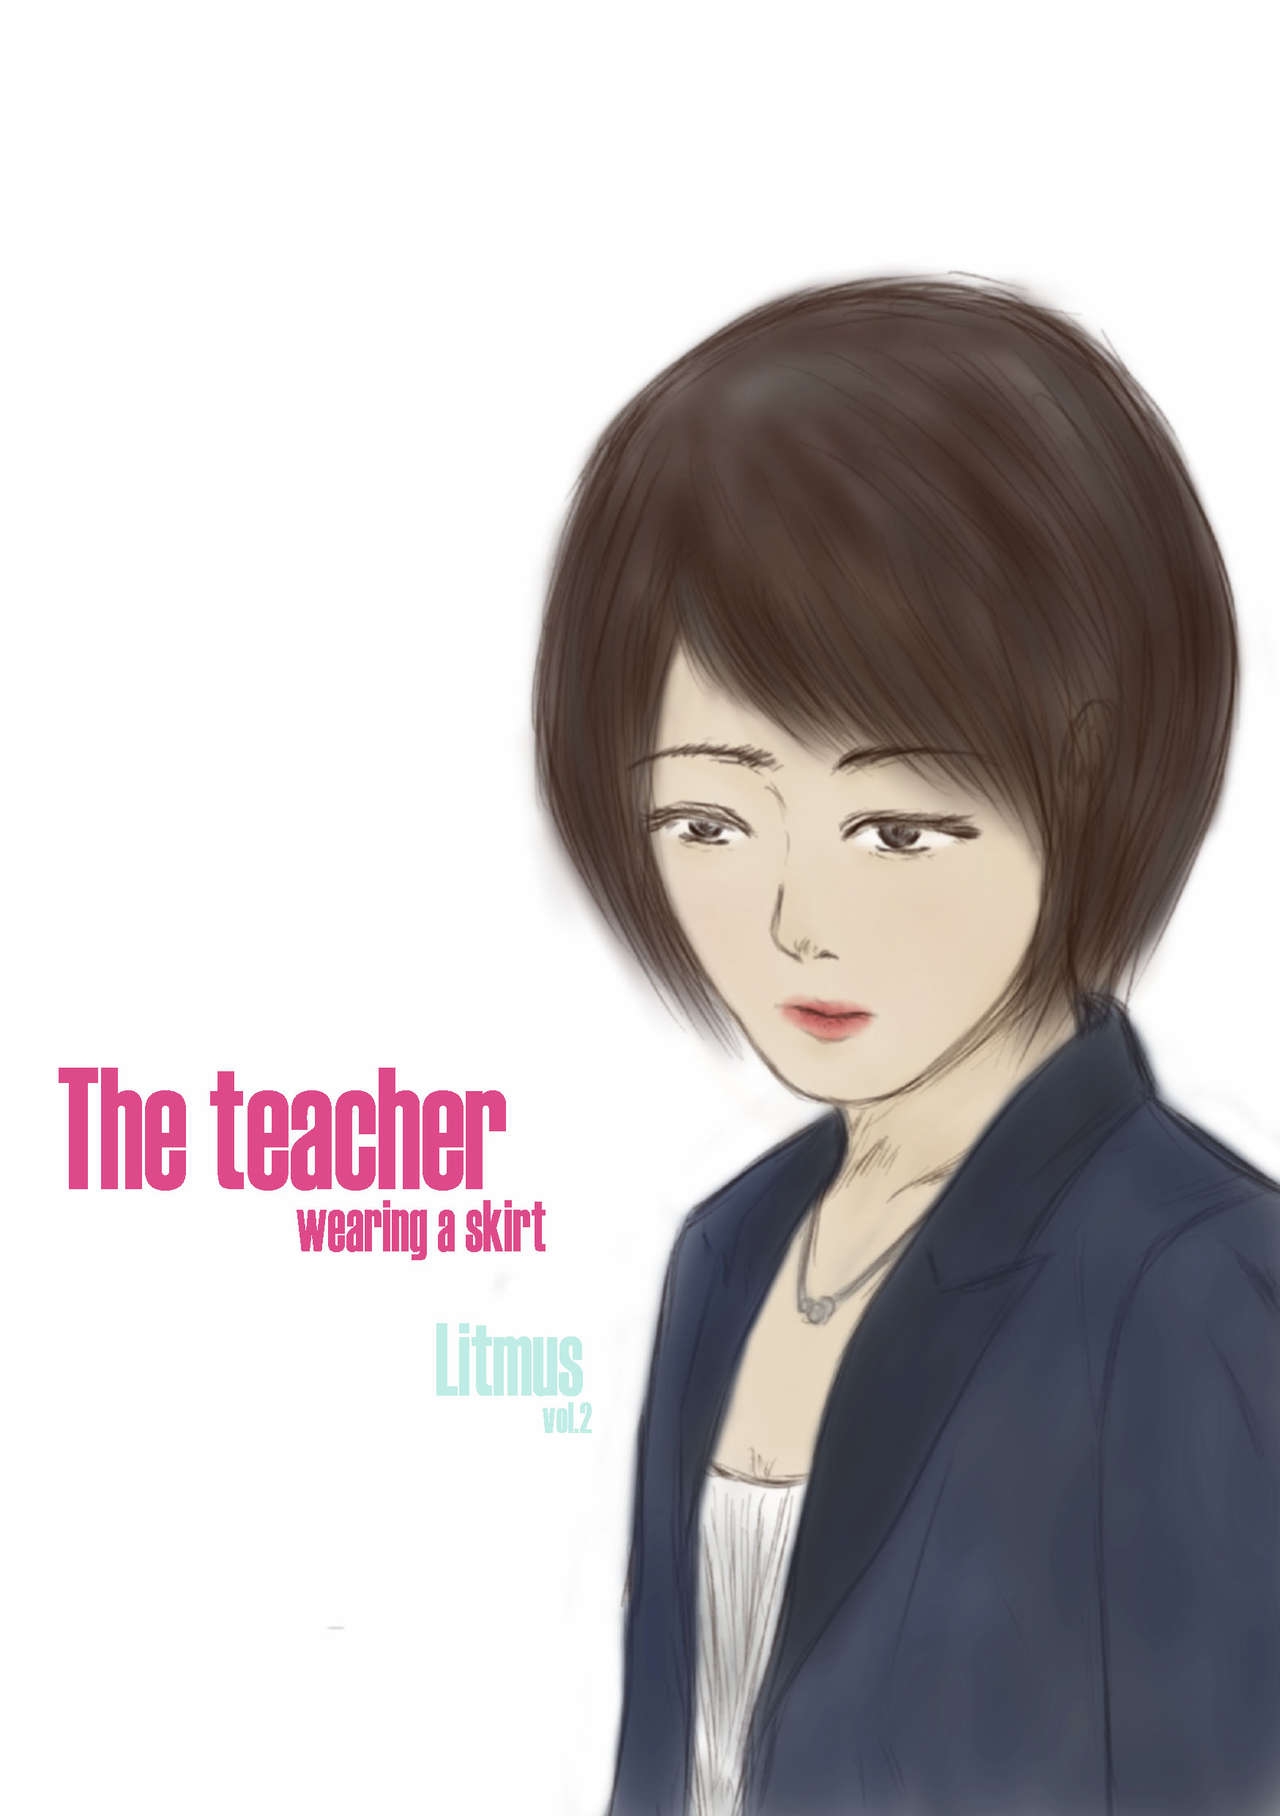 [valdam] Litmus Vol.2 - The teacher wearing a skirt [English] 0